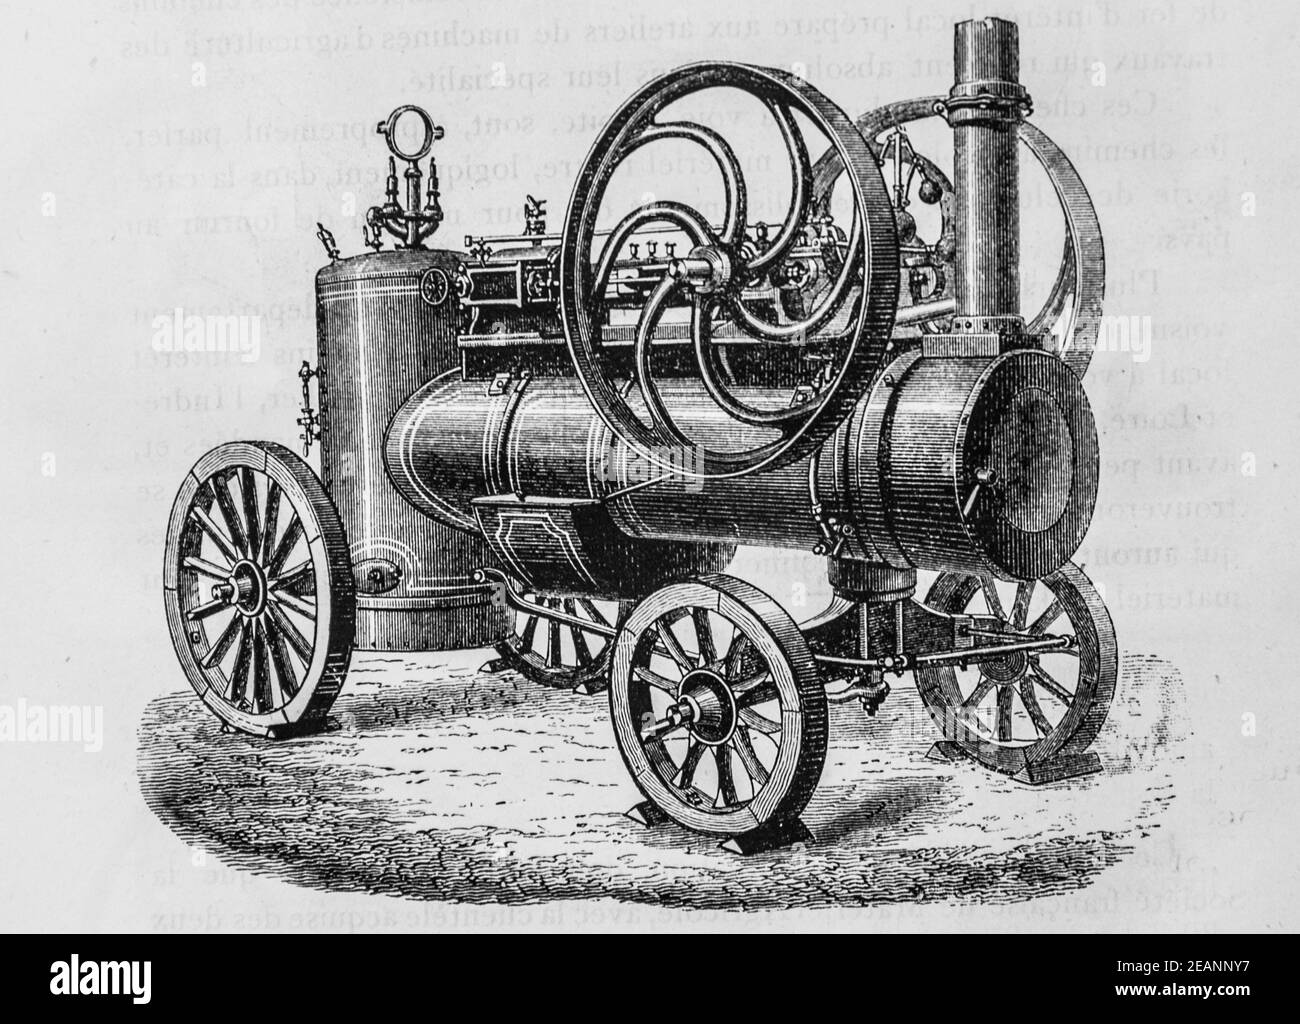 locomotive sur plaque en fonte,avec chaudiere a flammes directs, album agenda industriel,1882,editeur imprimerie tolmer Stock Photo